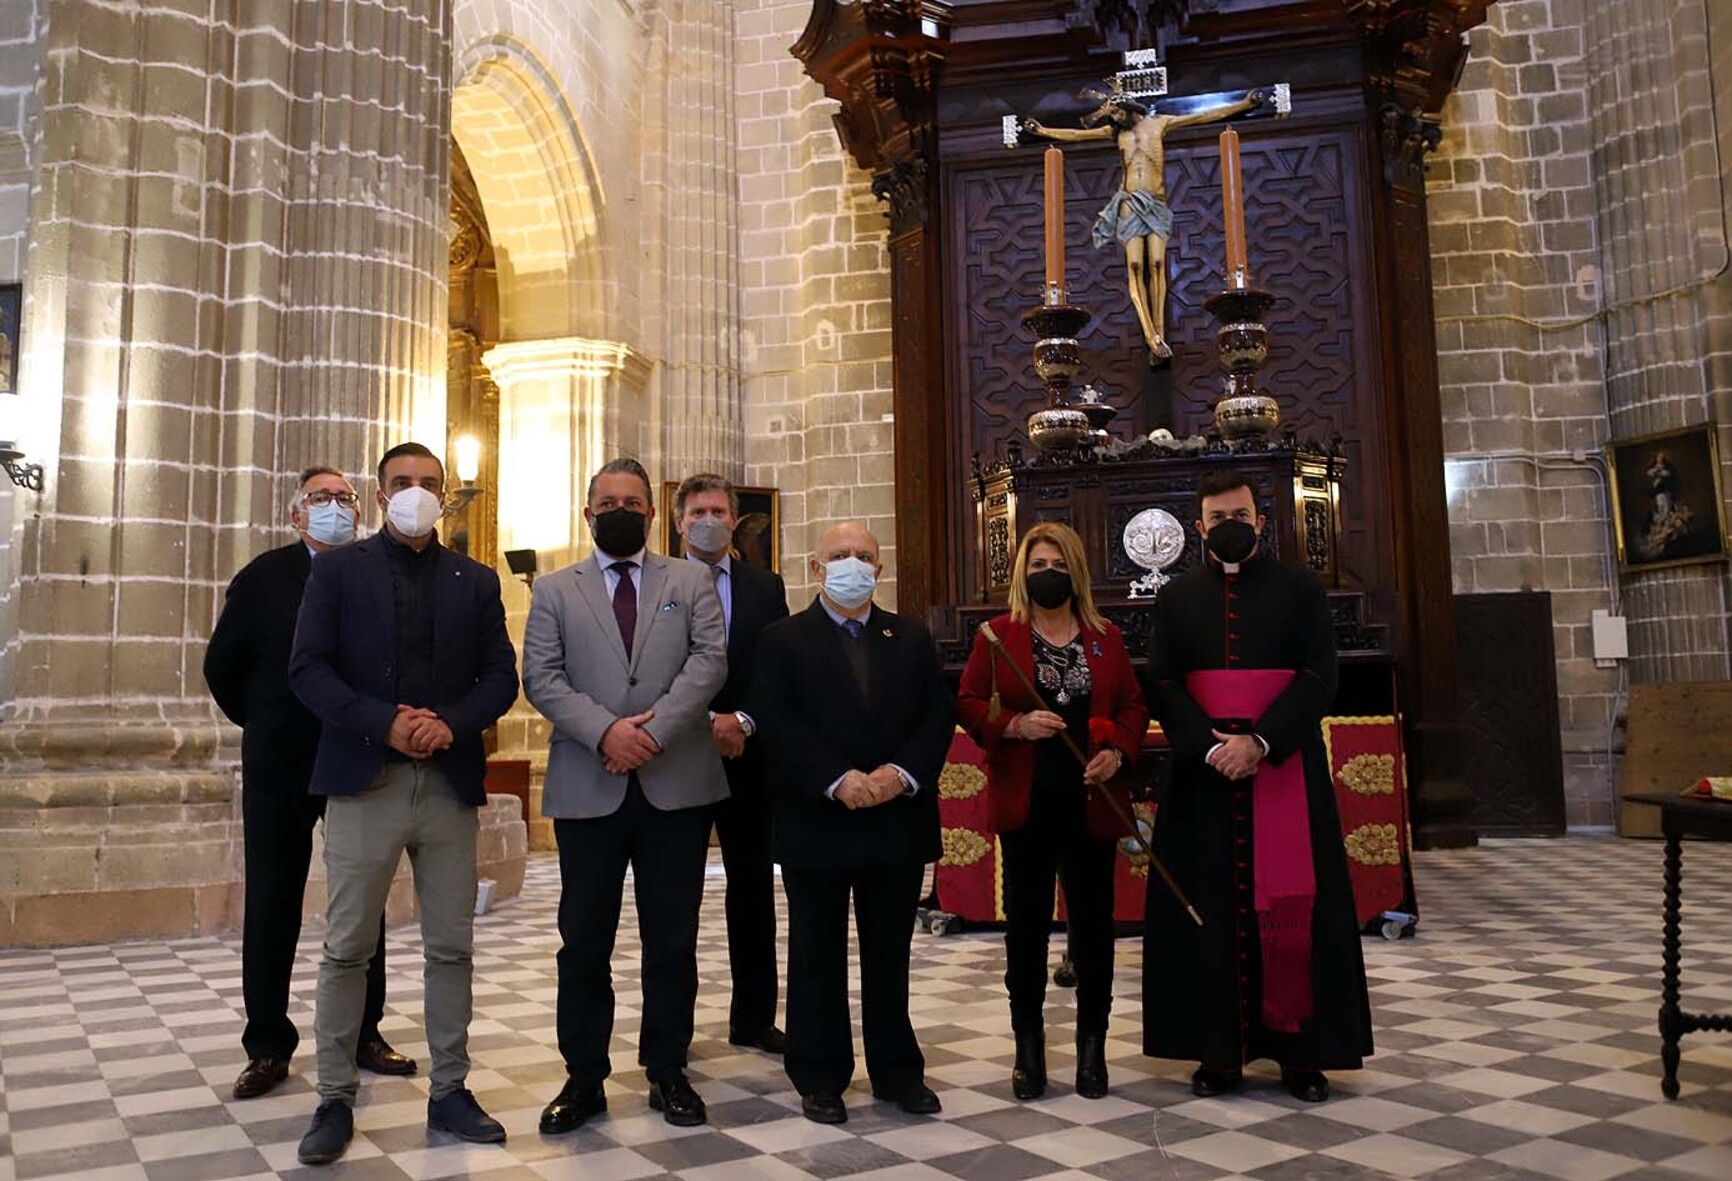 La alcaldesa, en el centro de la imagen, junto a otros miembros del gobierno local y de la Iglesia. Al fondo, el Cristo de la Viga, en la Catedral.